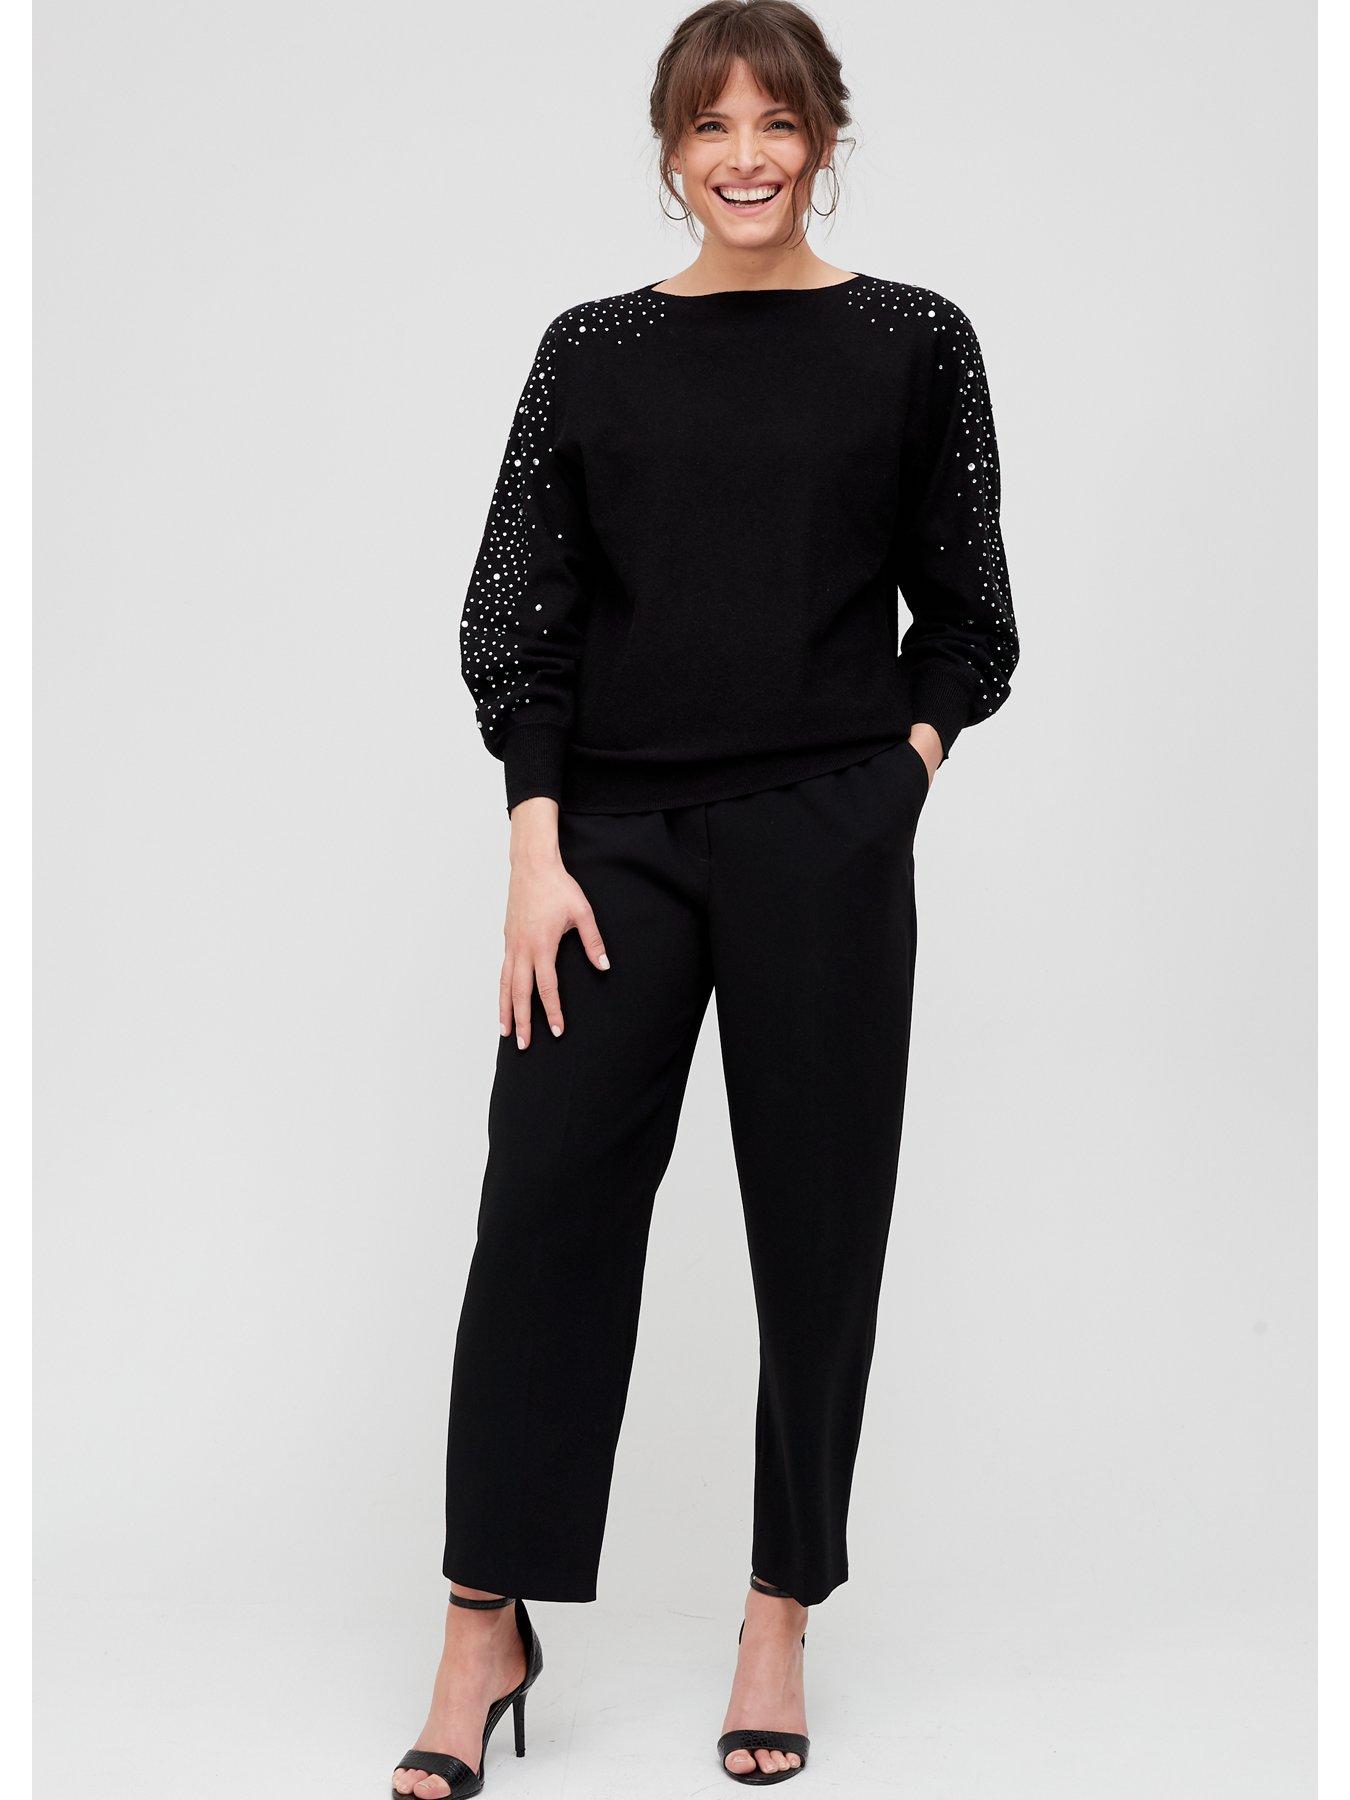  Embellished Sleeve Knitted Jumper - Black